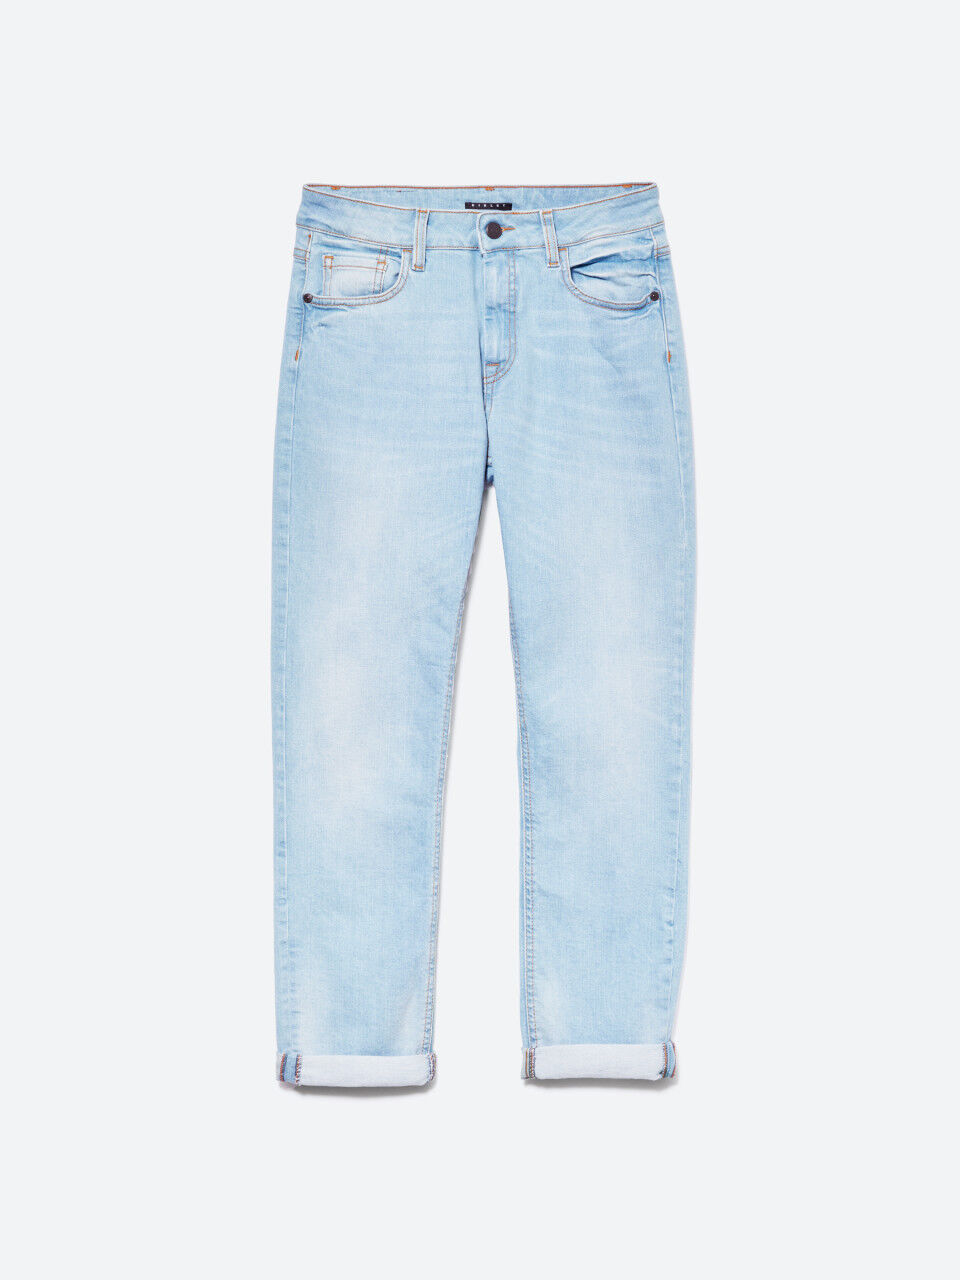 Jeans regular a vita alta con stampaMarine Serre di Denim Donna Abbigliamento da Jeans 